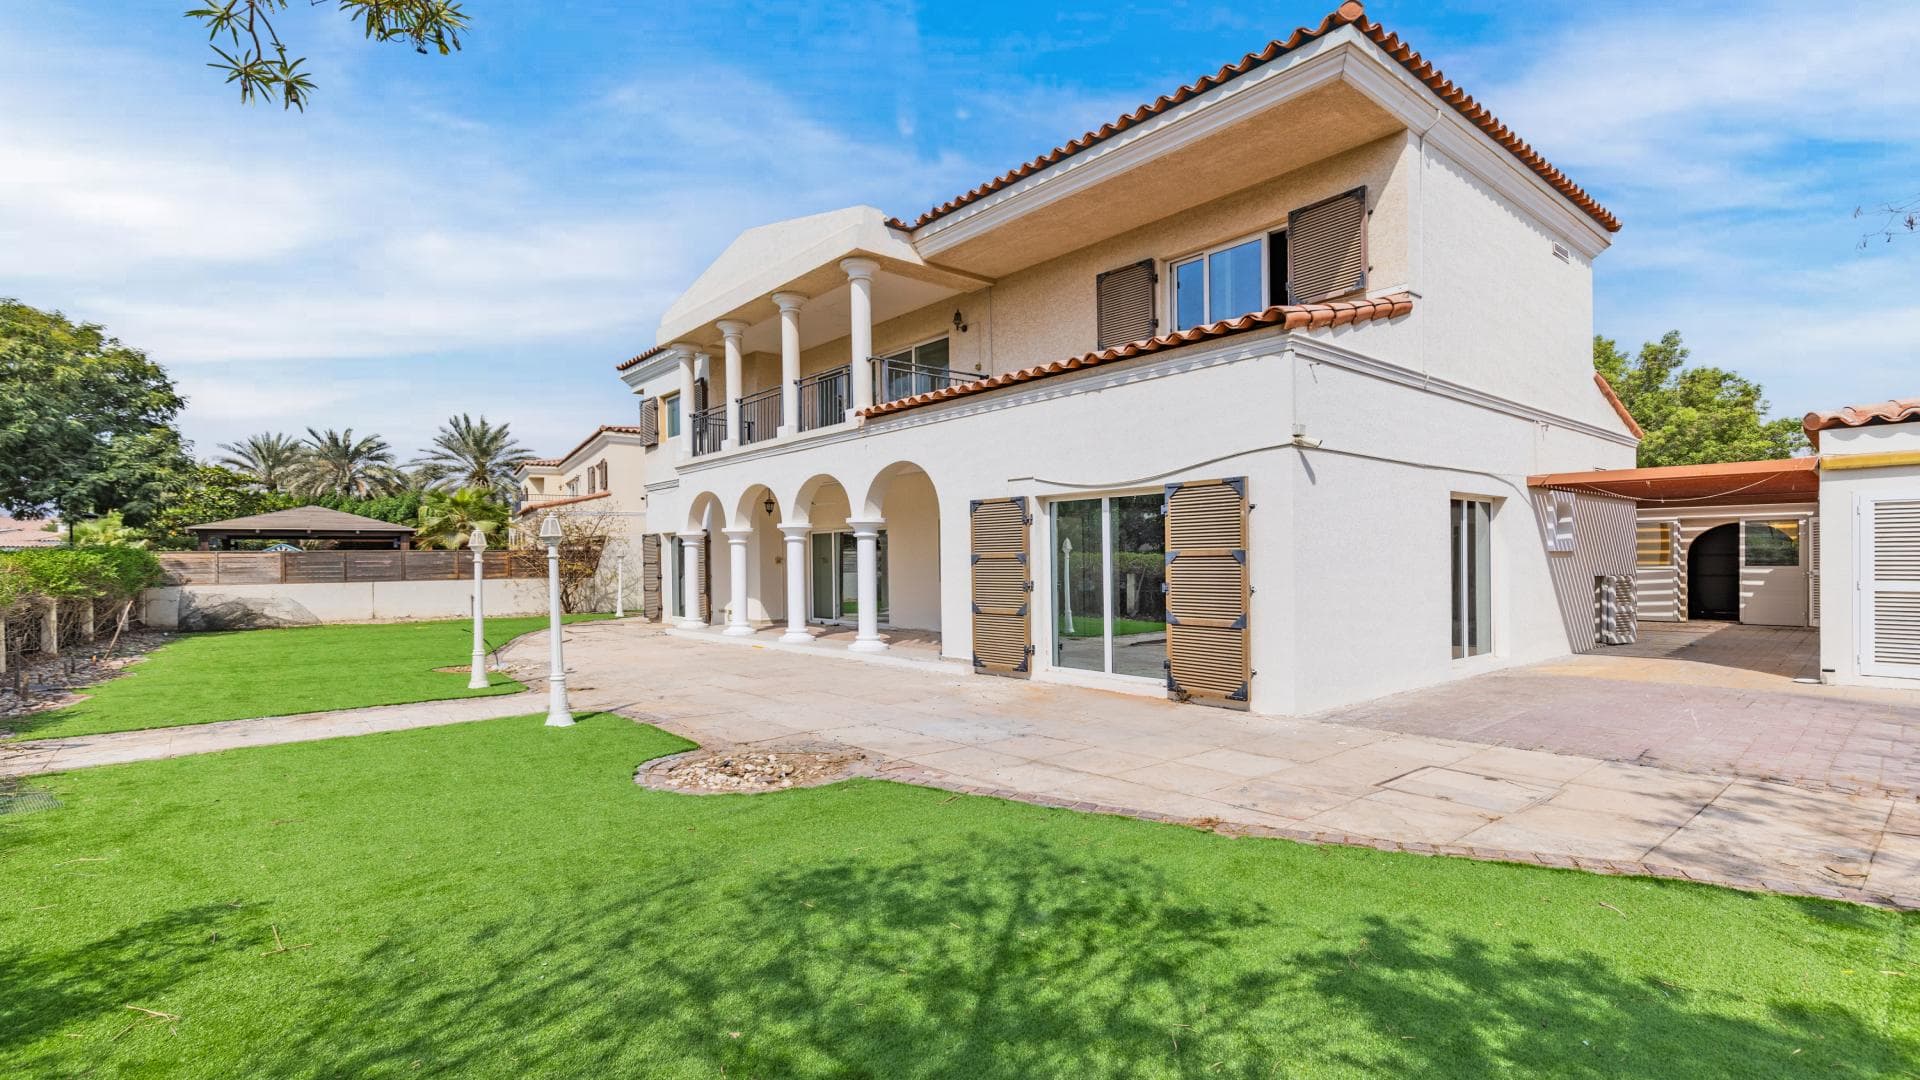 5 Bedroom Villa For Rent Al Thamam 36 Lp37118 17a897c1b13c0b00.jpg